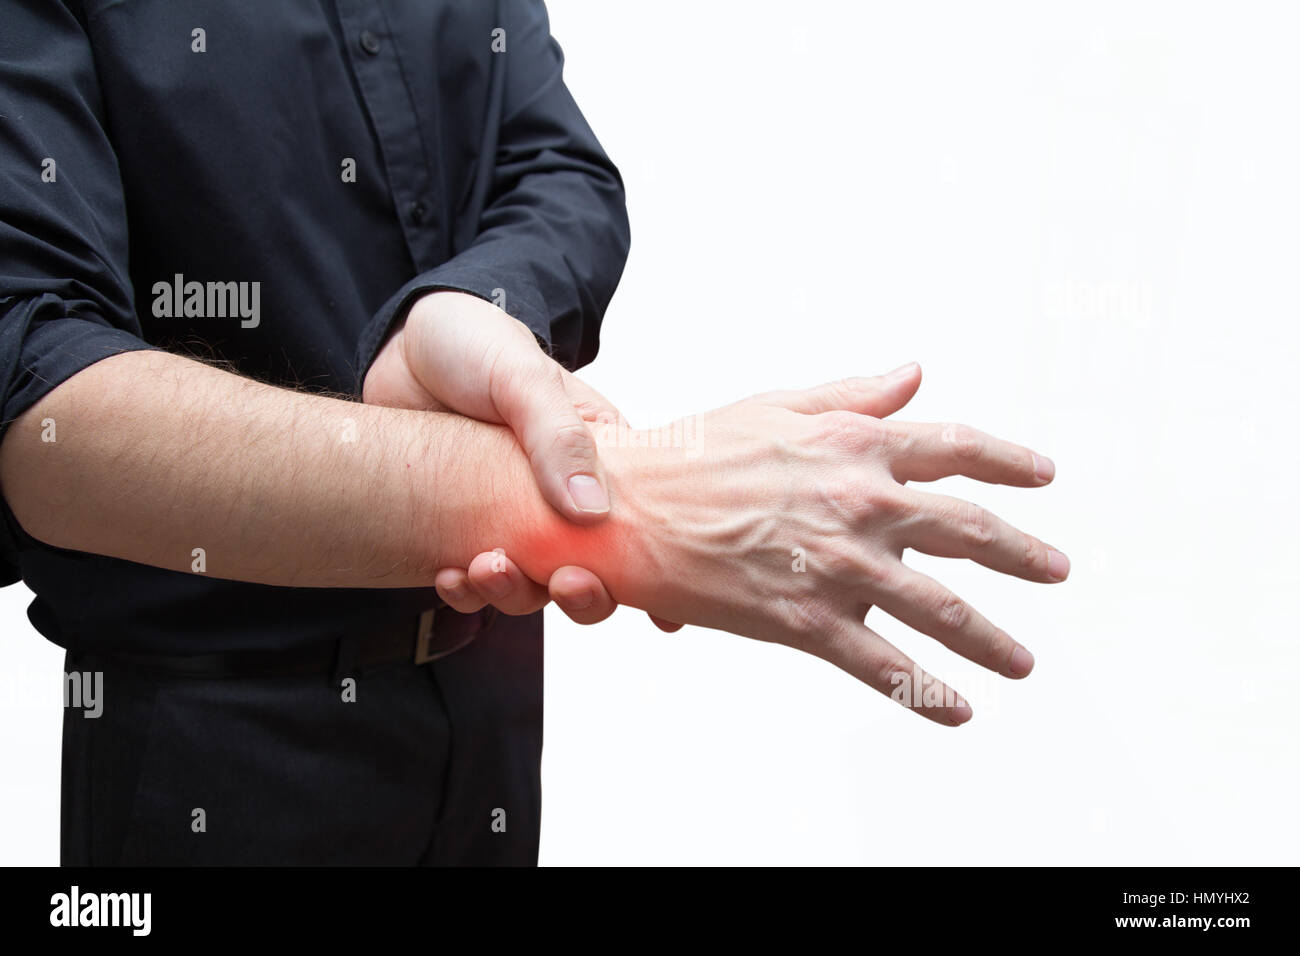 man press painful hand Stock Photo